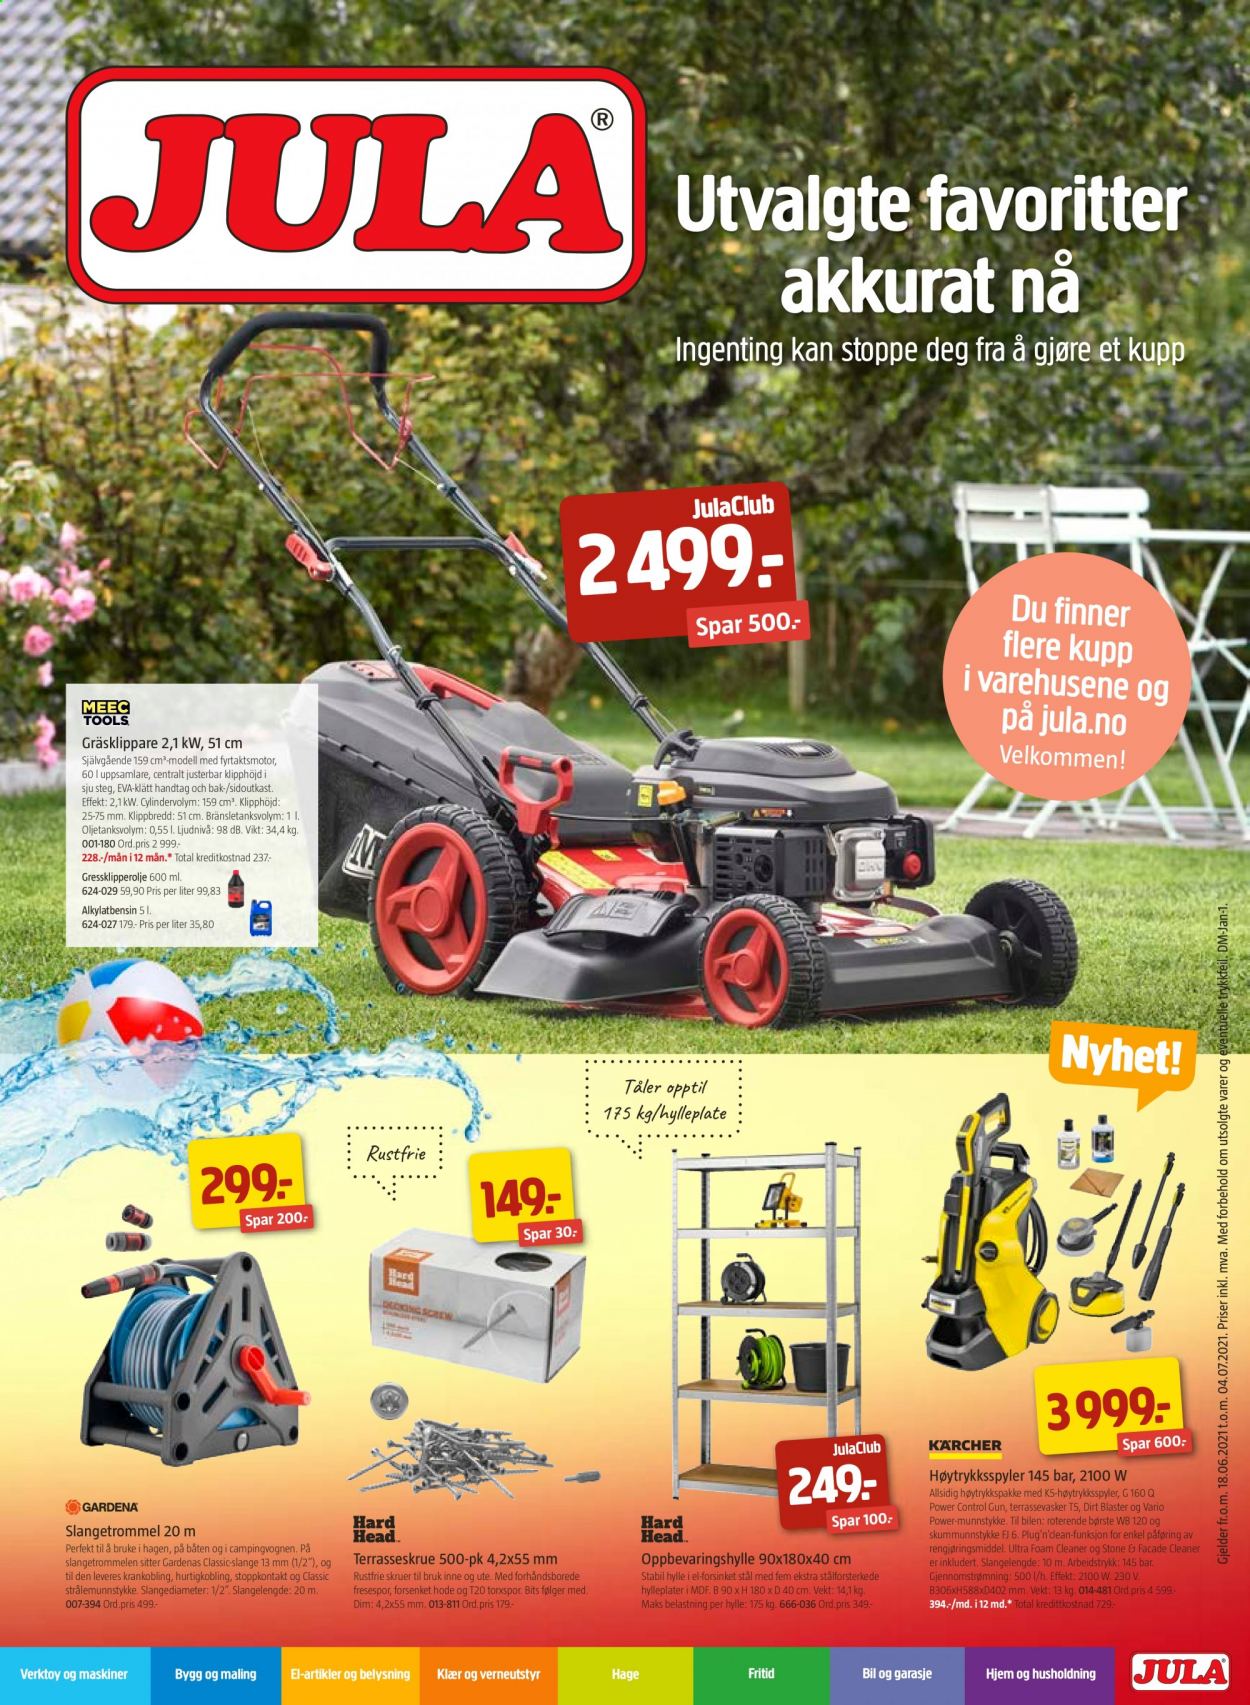 thumbnail - Kundeavis Jula - 18.6.2021 - 4.7.2021 - Produkter fra tilbudsaviser - skruer, verktøy, oppbevaringshylle, slangetrommel. Side 1.